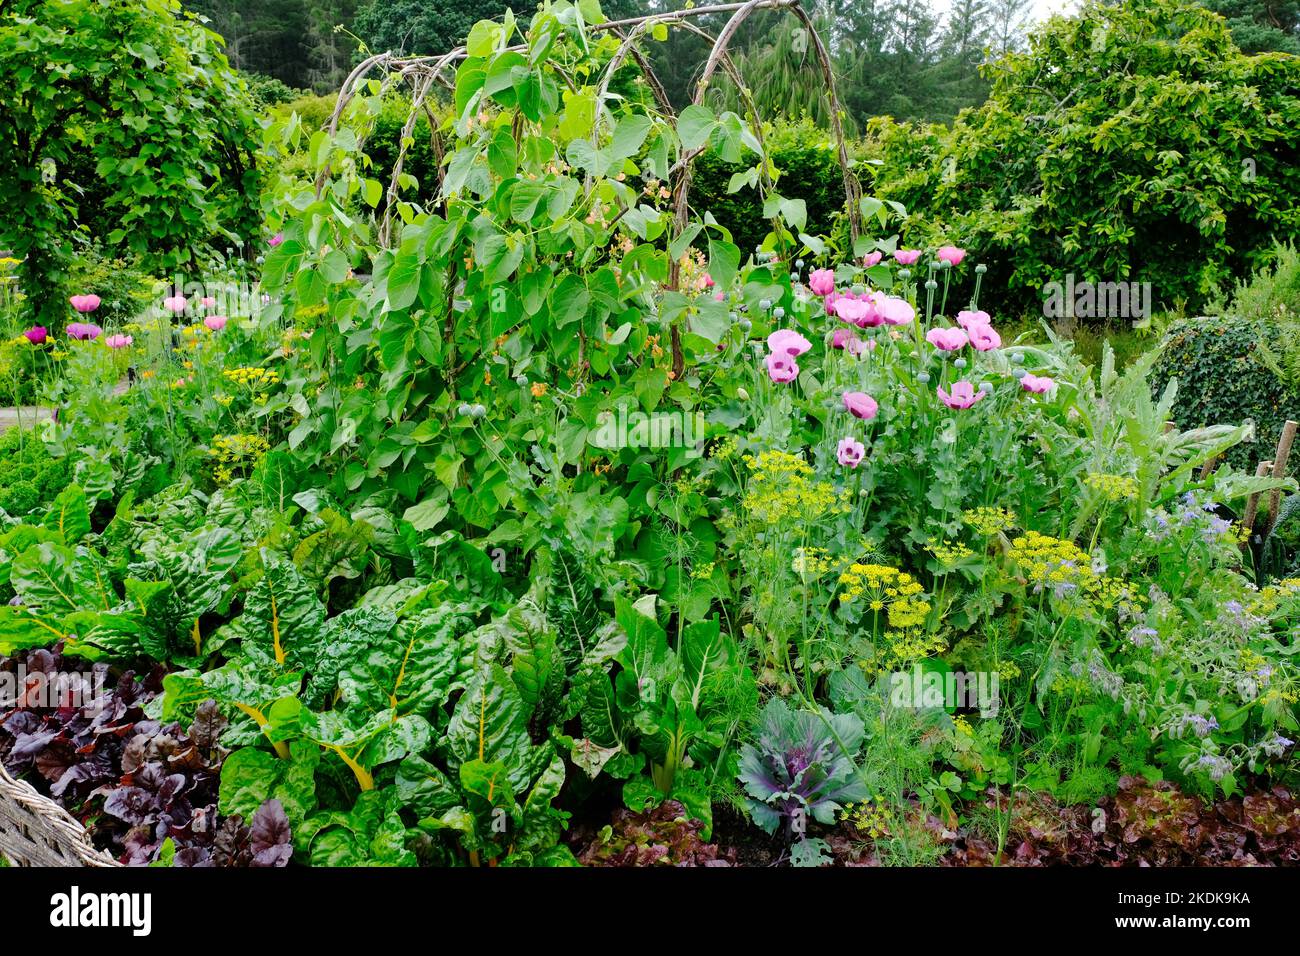 Potager style vegetable garden - John Gollop Stock Photo